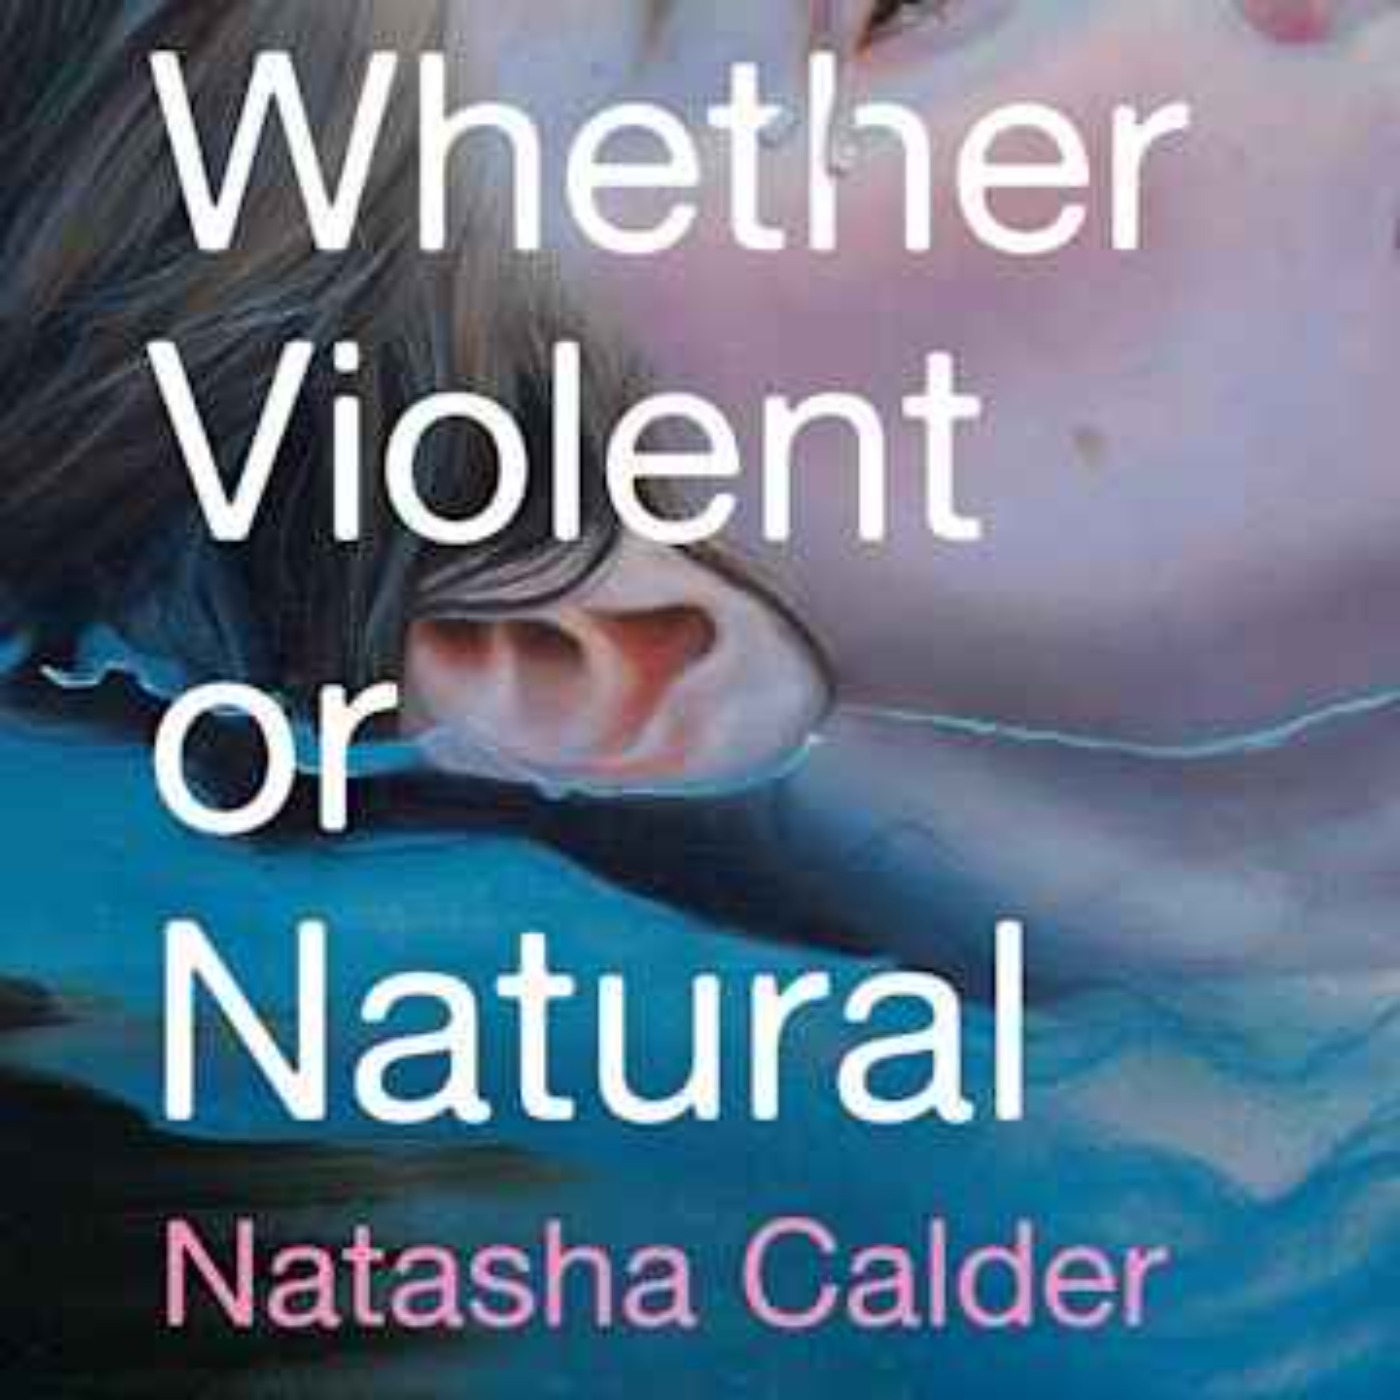 Little Atoms 831 - Natasha Calder’s Whether Violent or Natural